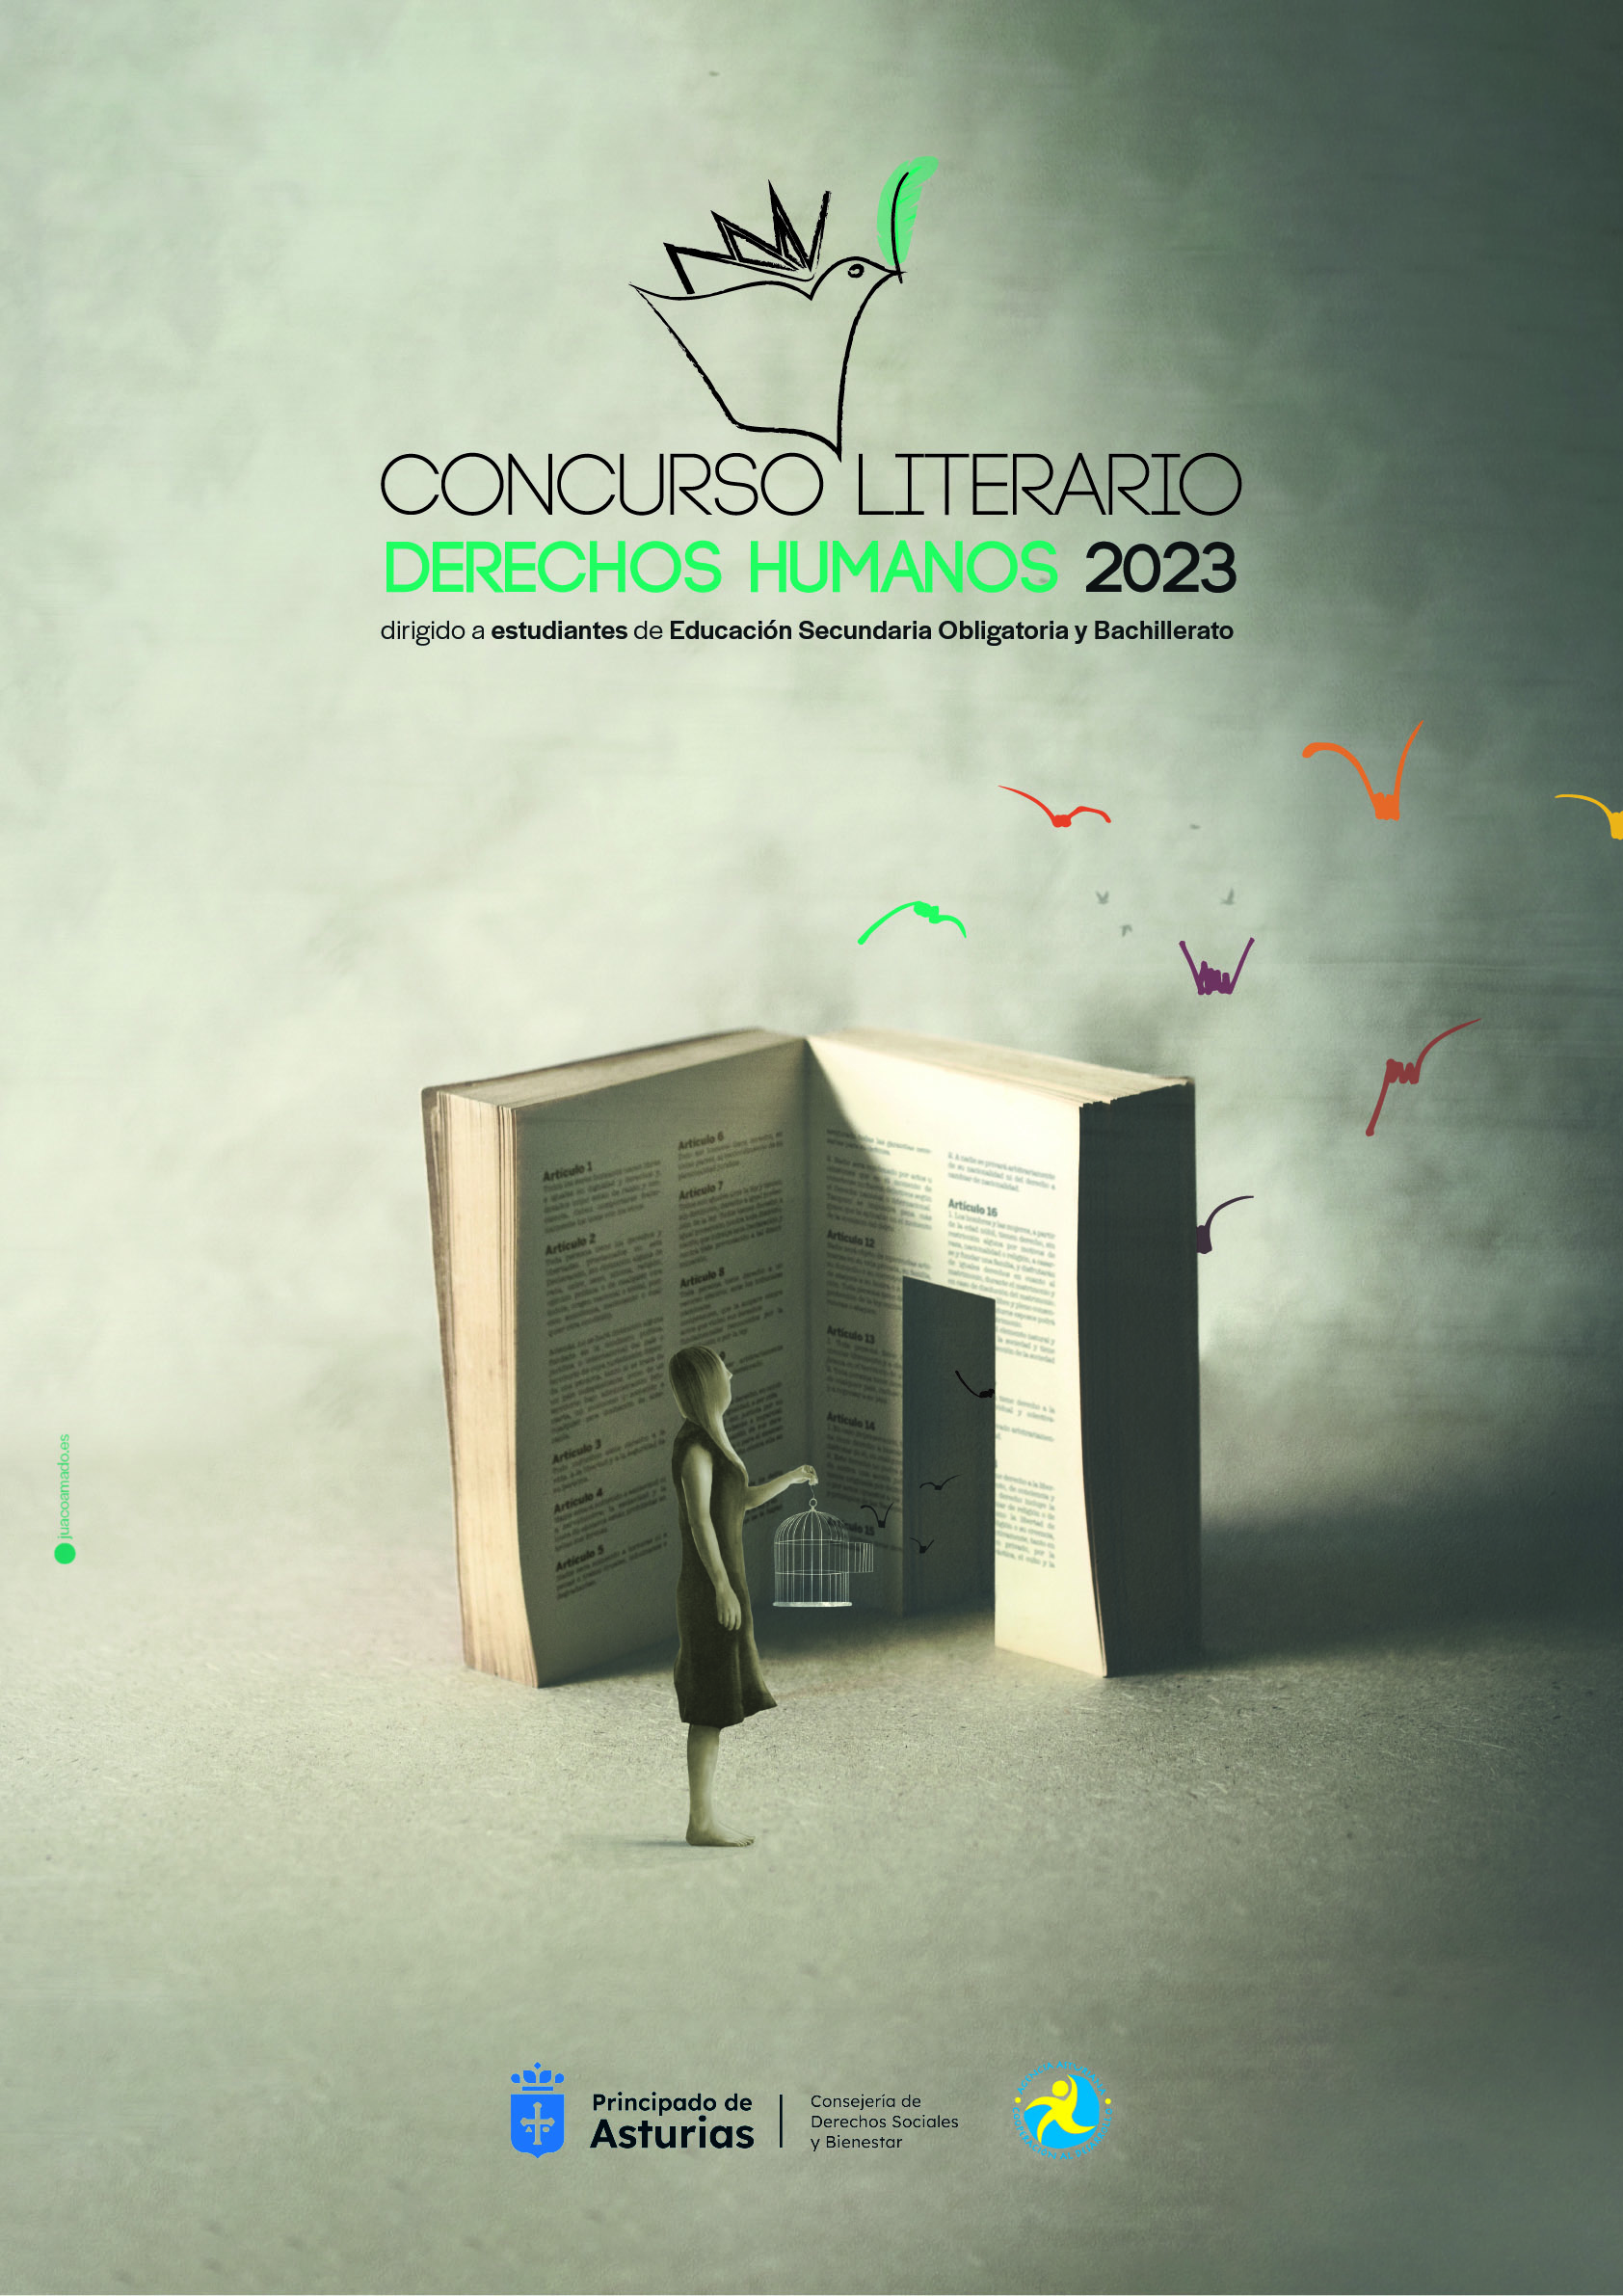 Imagen - La Agencia Asturiana de Cooperación al Desarrollo convoca la III edición del Concurso Literario de Derechos Humanos